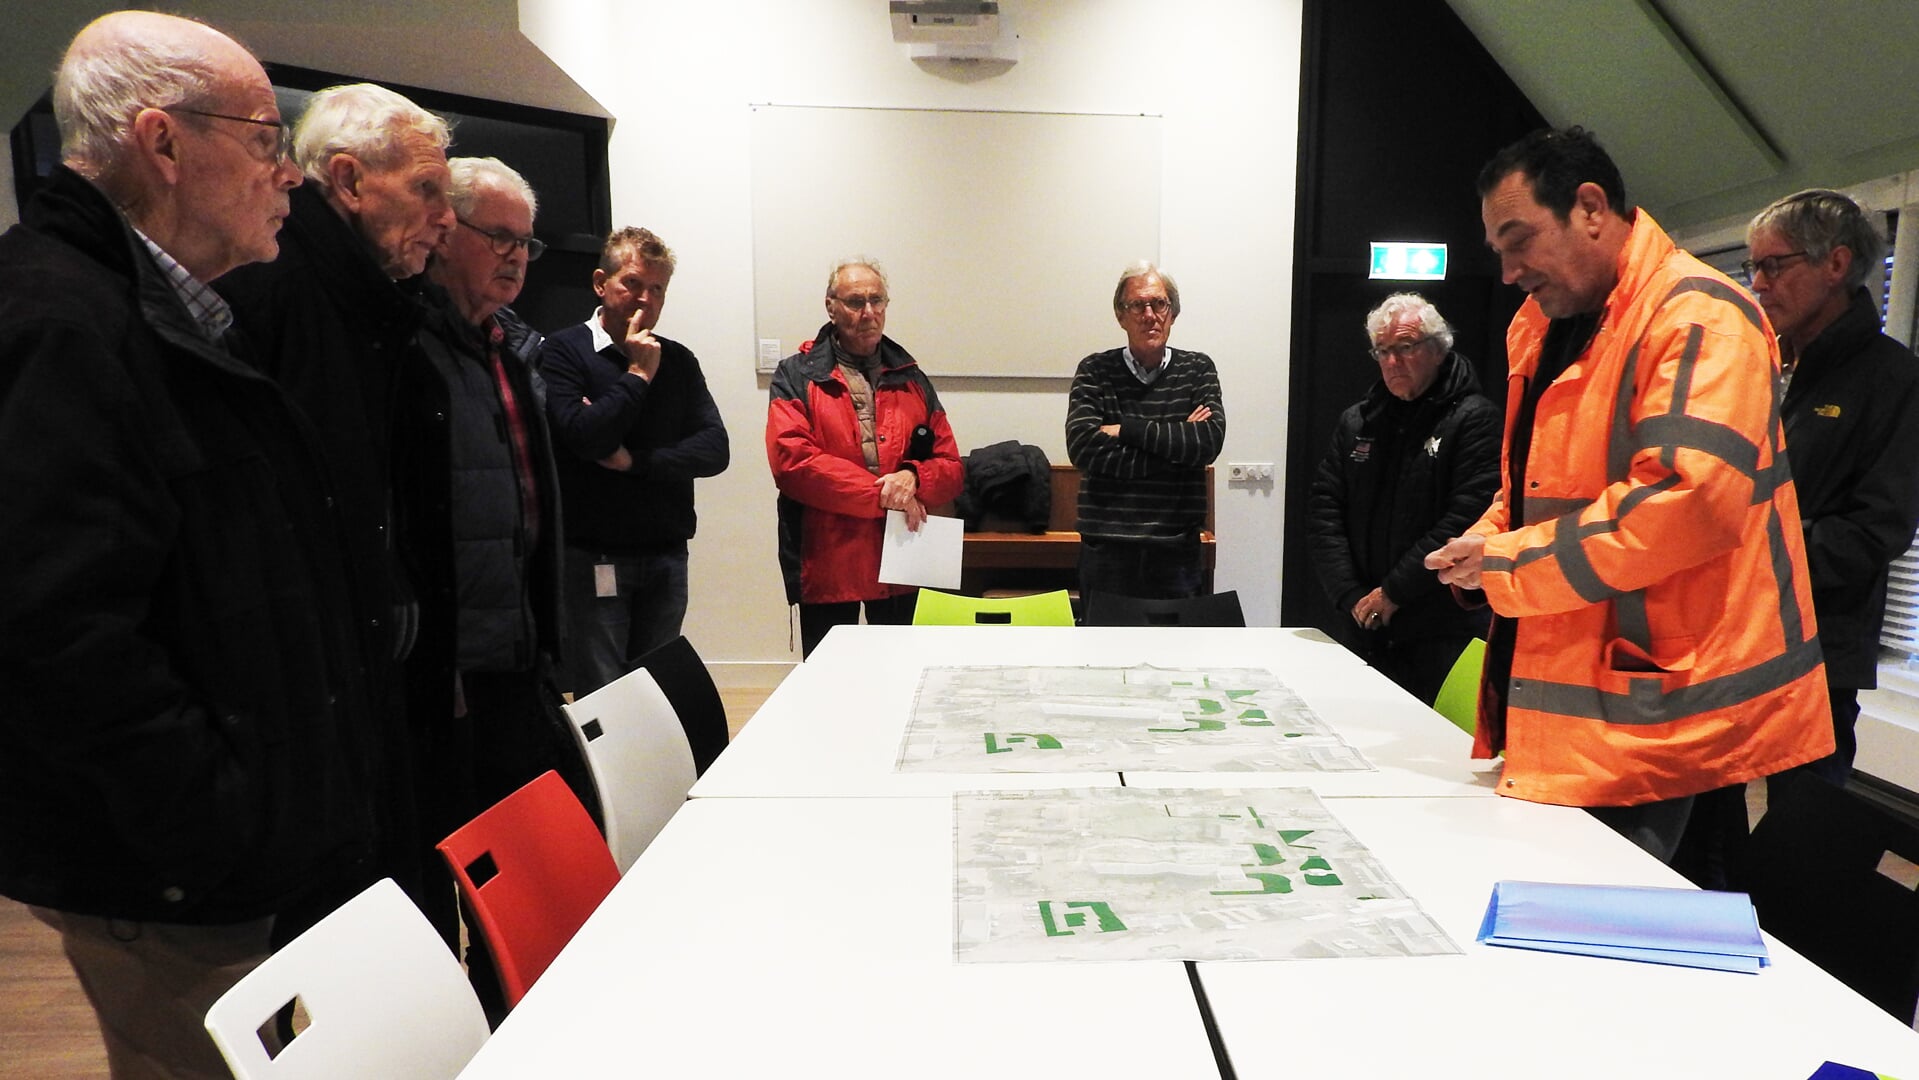 Projectleider Corne van Steen, in reflectiejas, geeft aan de hand van tekeningen een uitleg over de plannen.